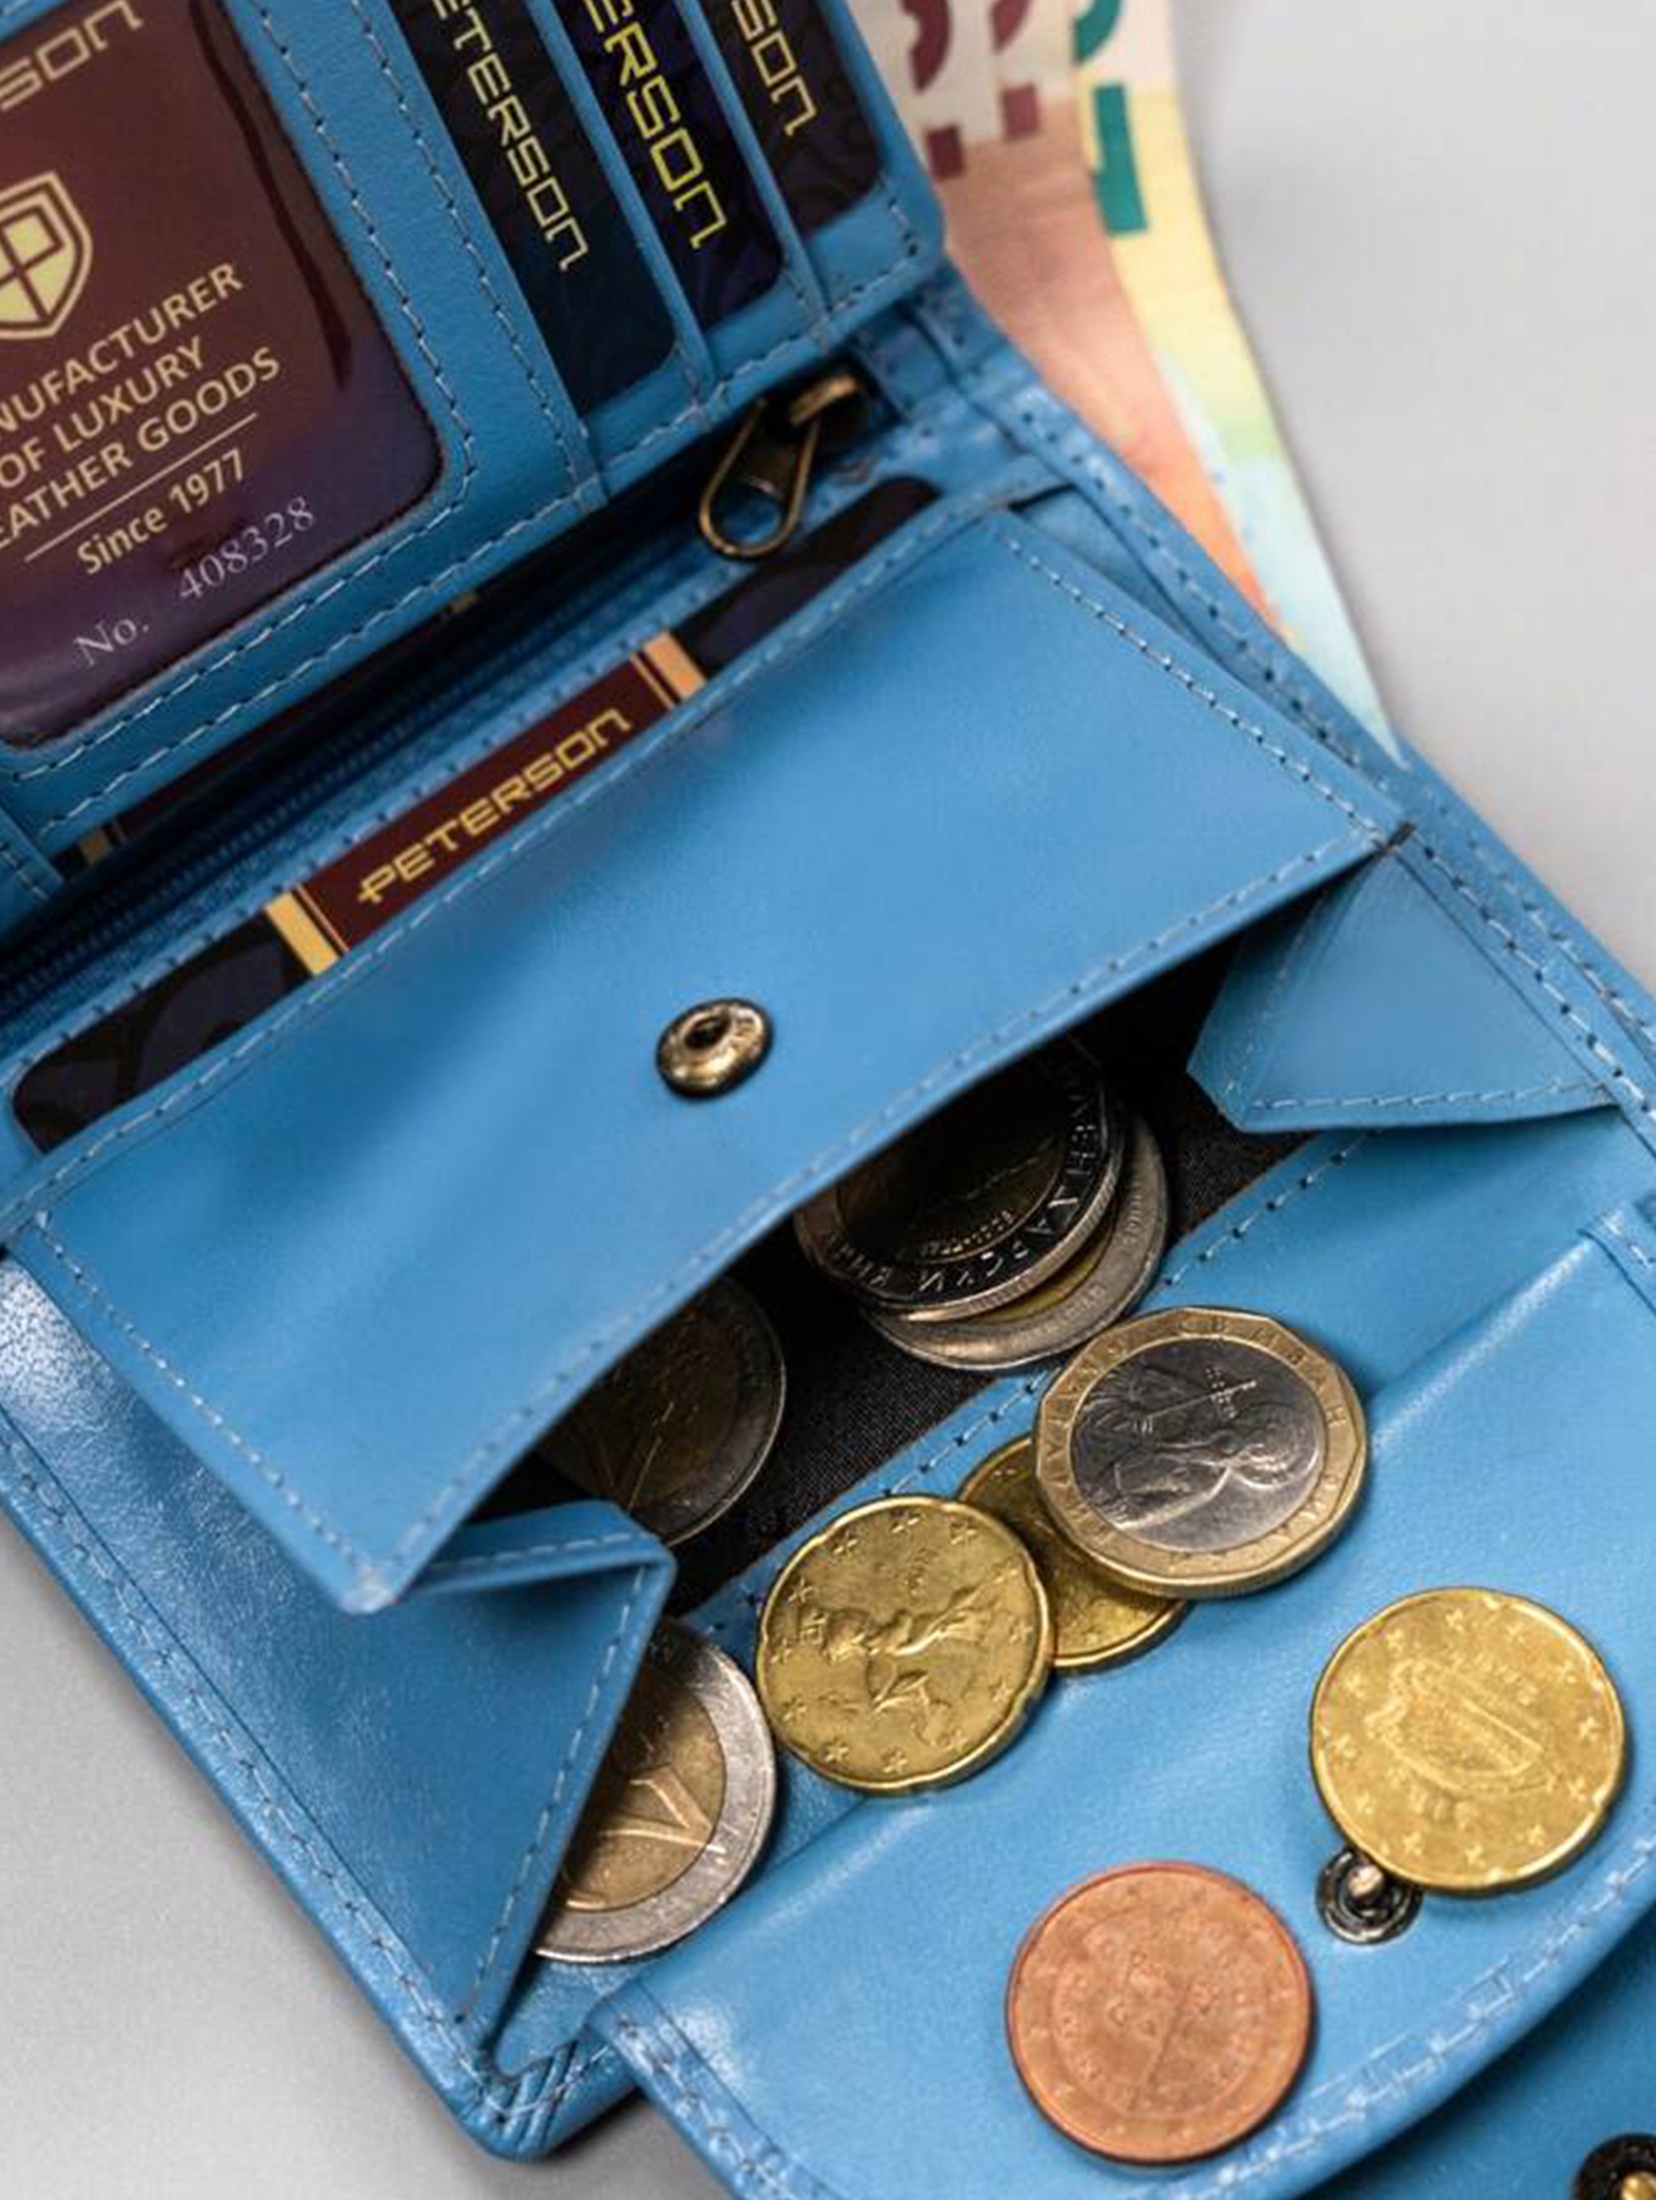 Peterson Mały, skórzany portfel damski na zatrzask- niebieski